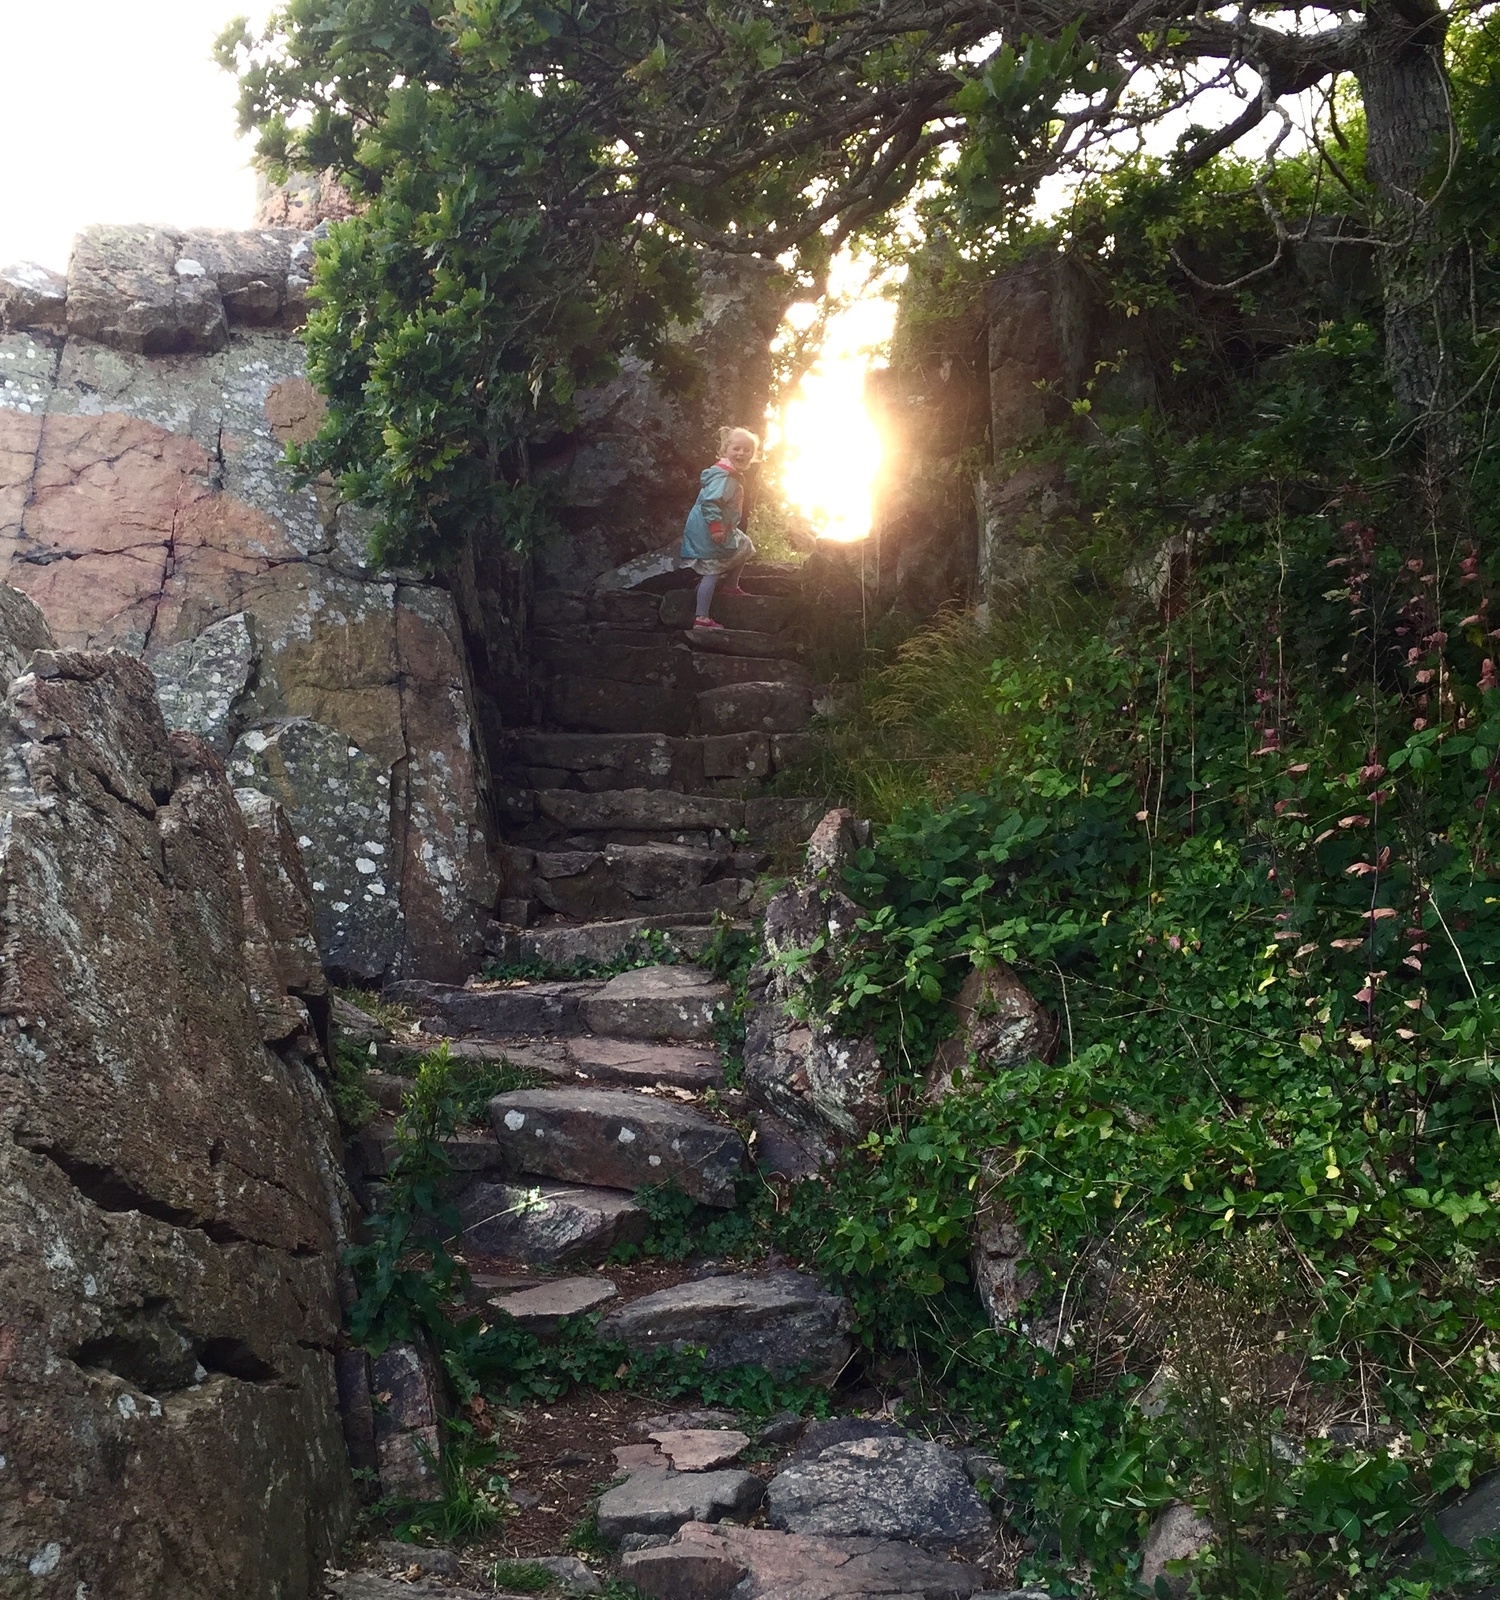 Stairway to heaven; stigen mellan Mölle och Ransvik.Att vandra på denna stig i solnedgång är att befinna sig mellan fantasi och verklighet. Den lilla trappklättraren på bilden är fyraåriga Vega Ragnarsson.
Bilden är tagen av Patrik Nilsson.